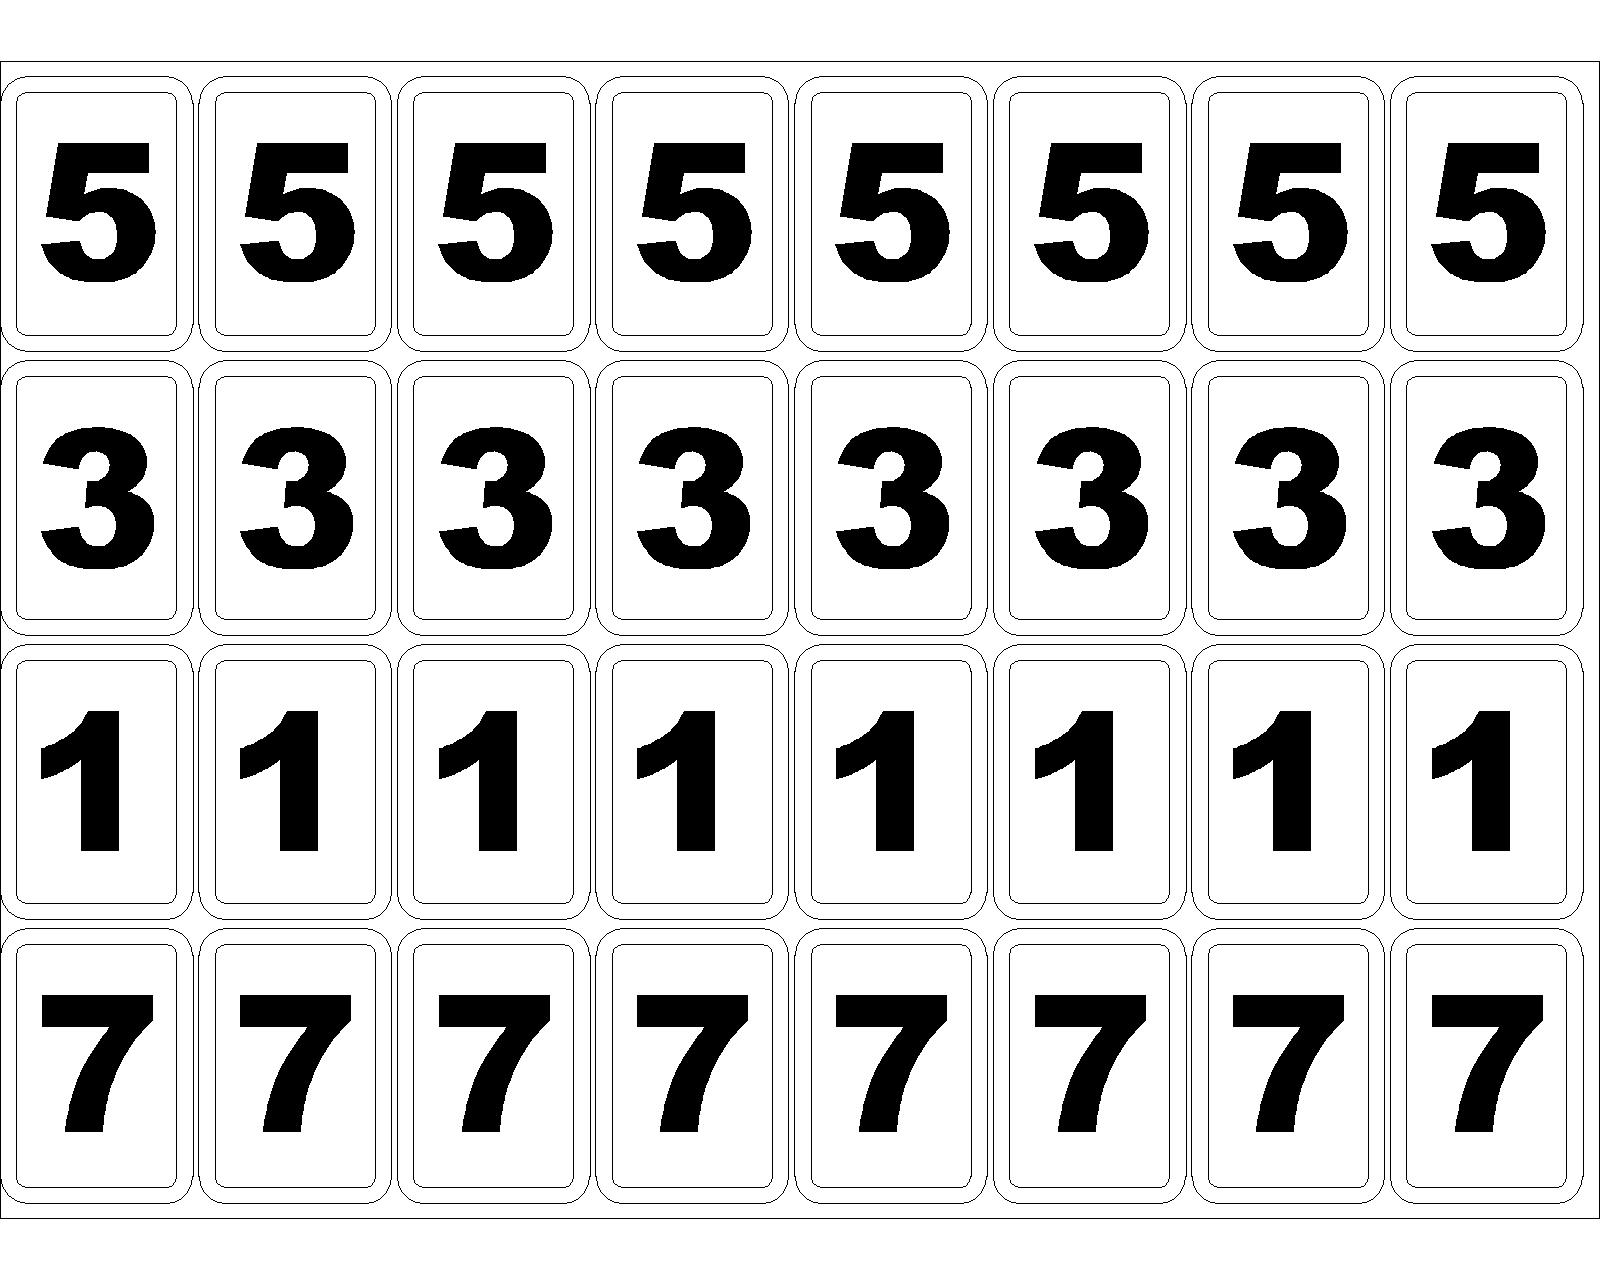 cbjd-regras-damas-010113 - Jogos Matematicos